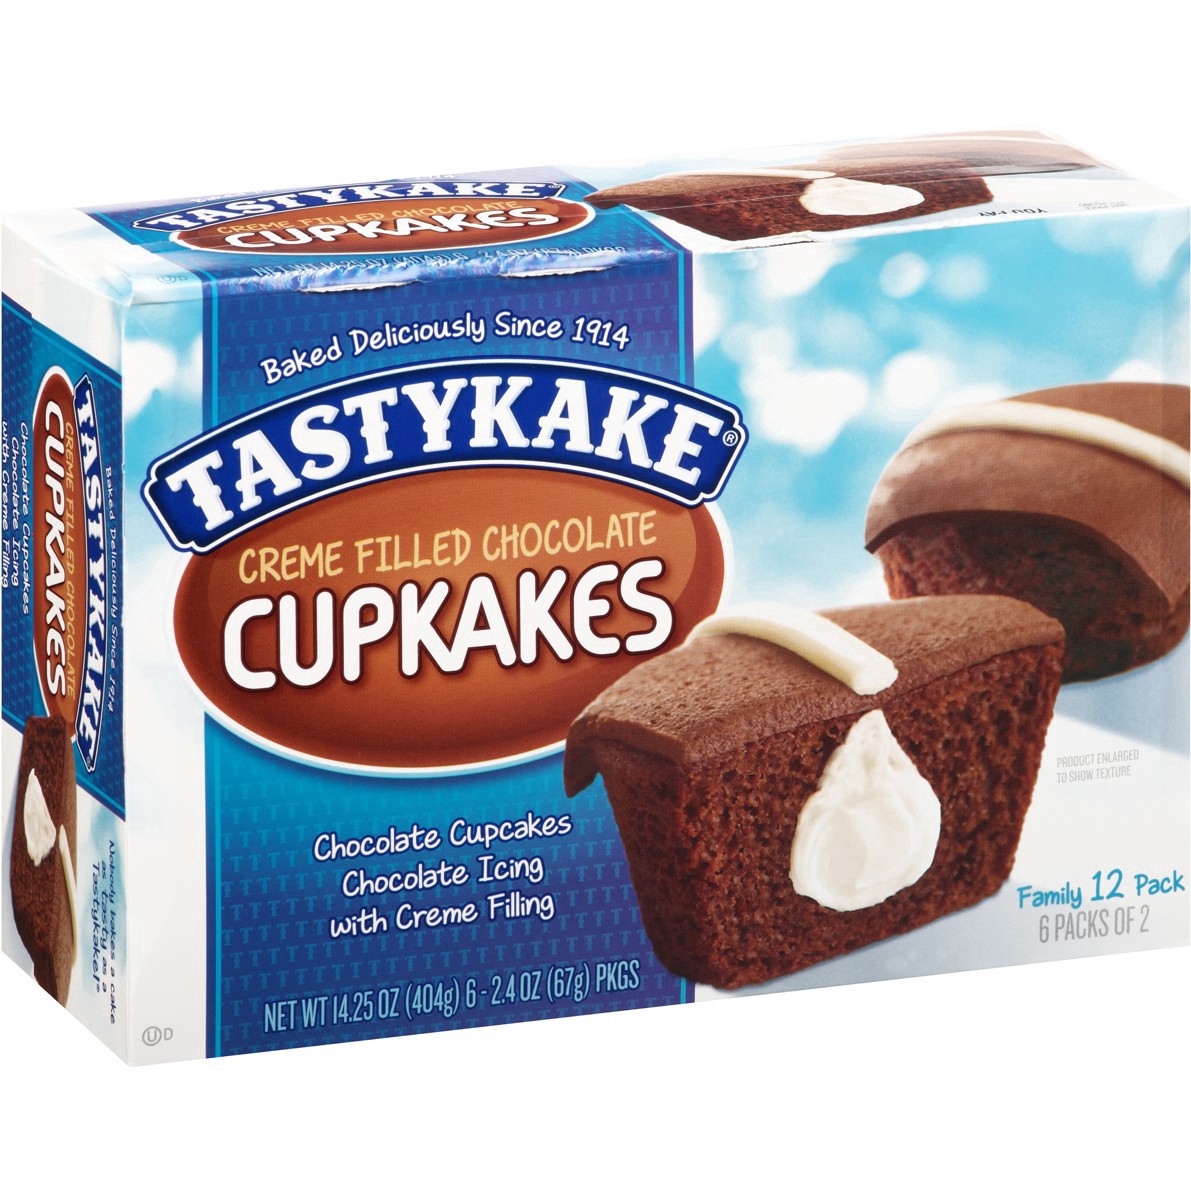 slide 25 of 59, Tastykake Creme Filled Chocolate Cupcakes 6-2.4 oz. Packs, 6 ct